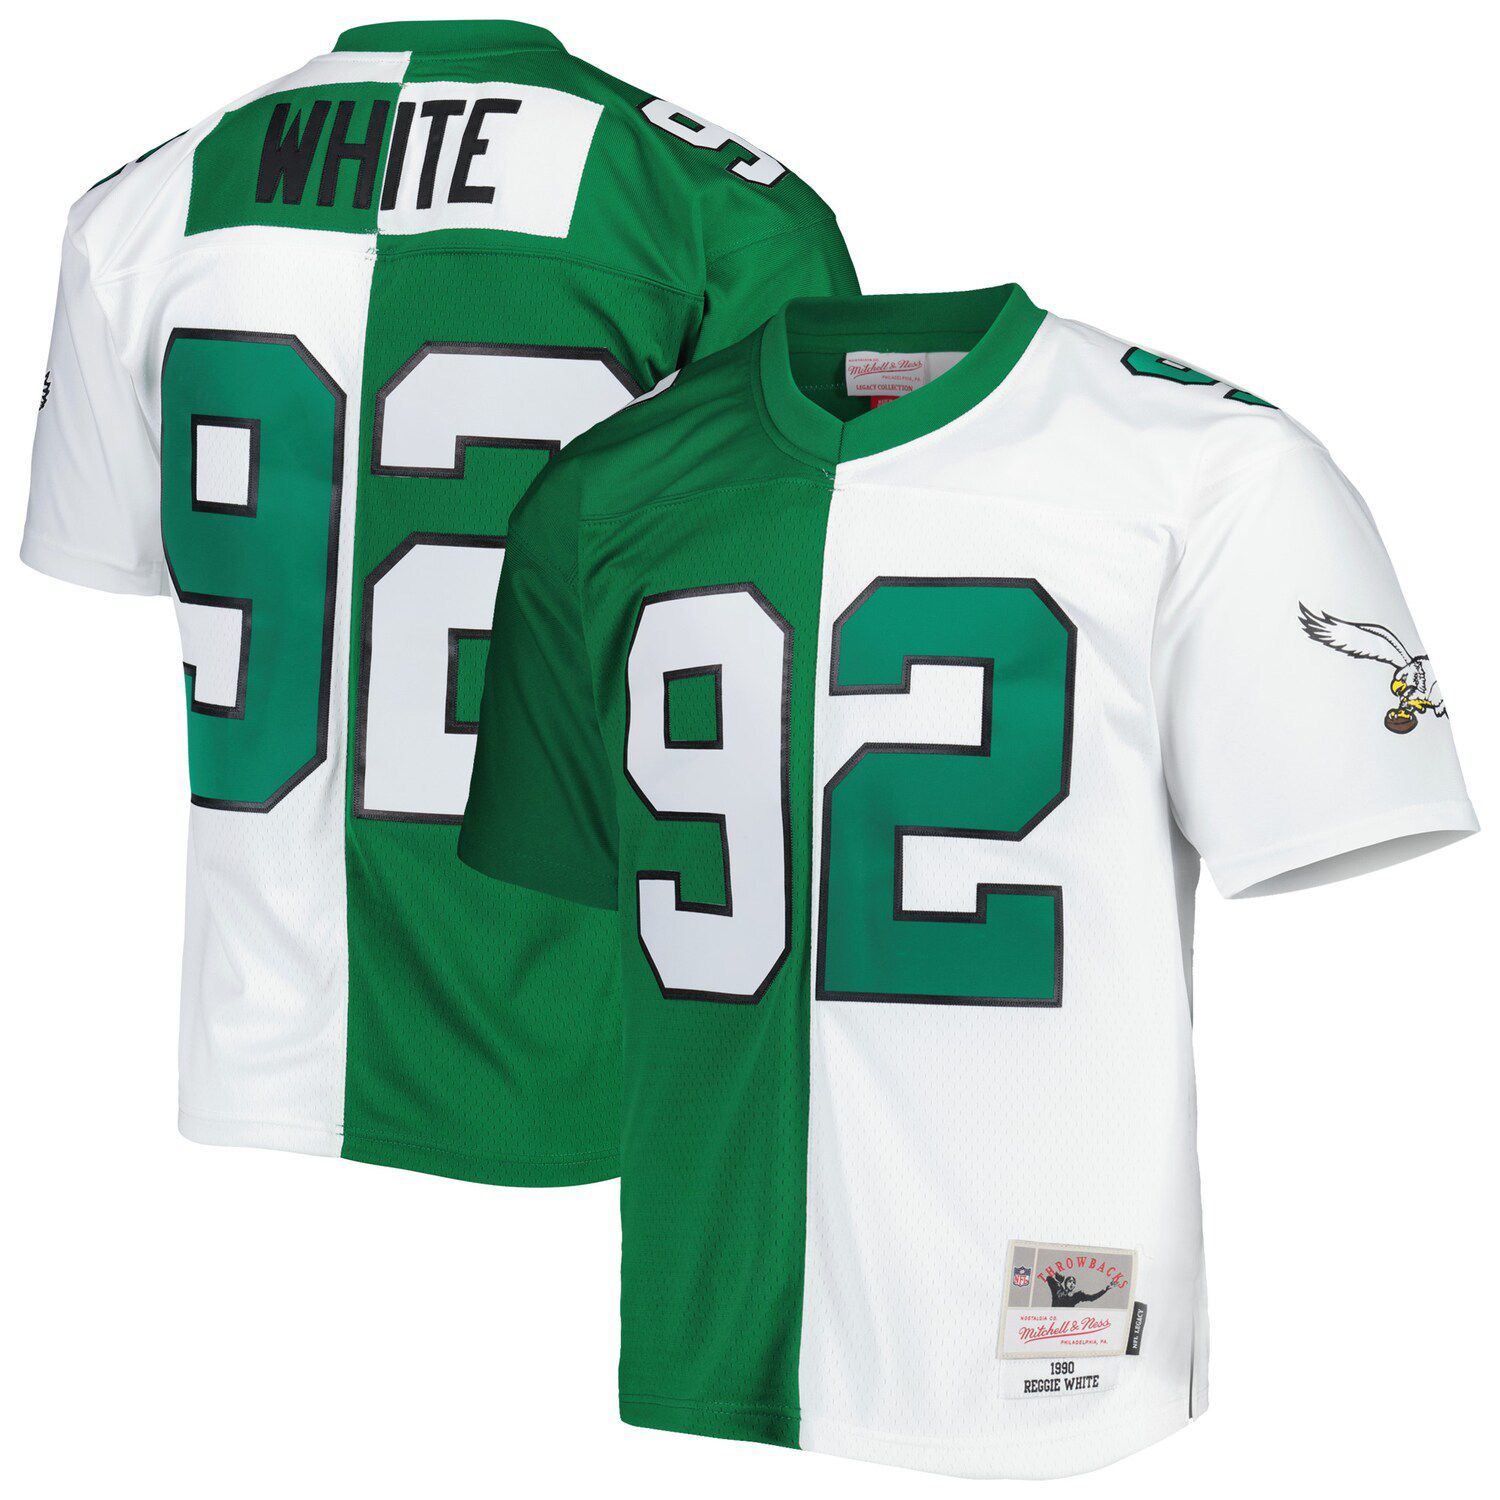 Eagles Reggie White jersey